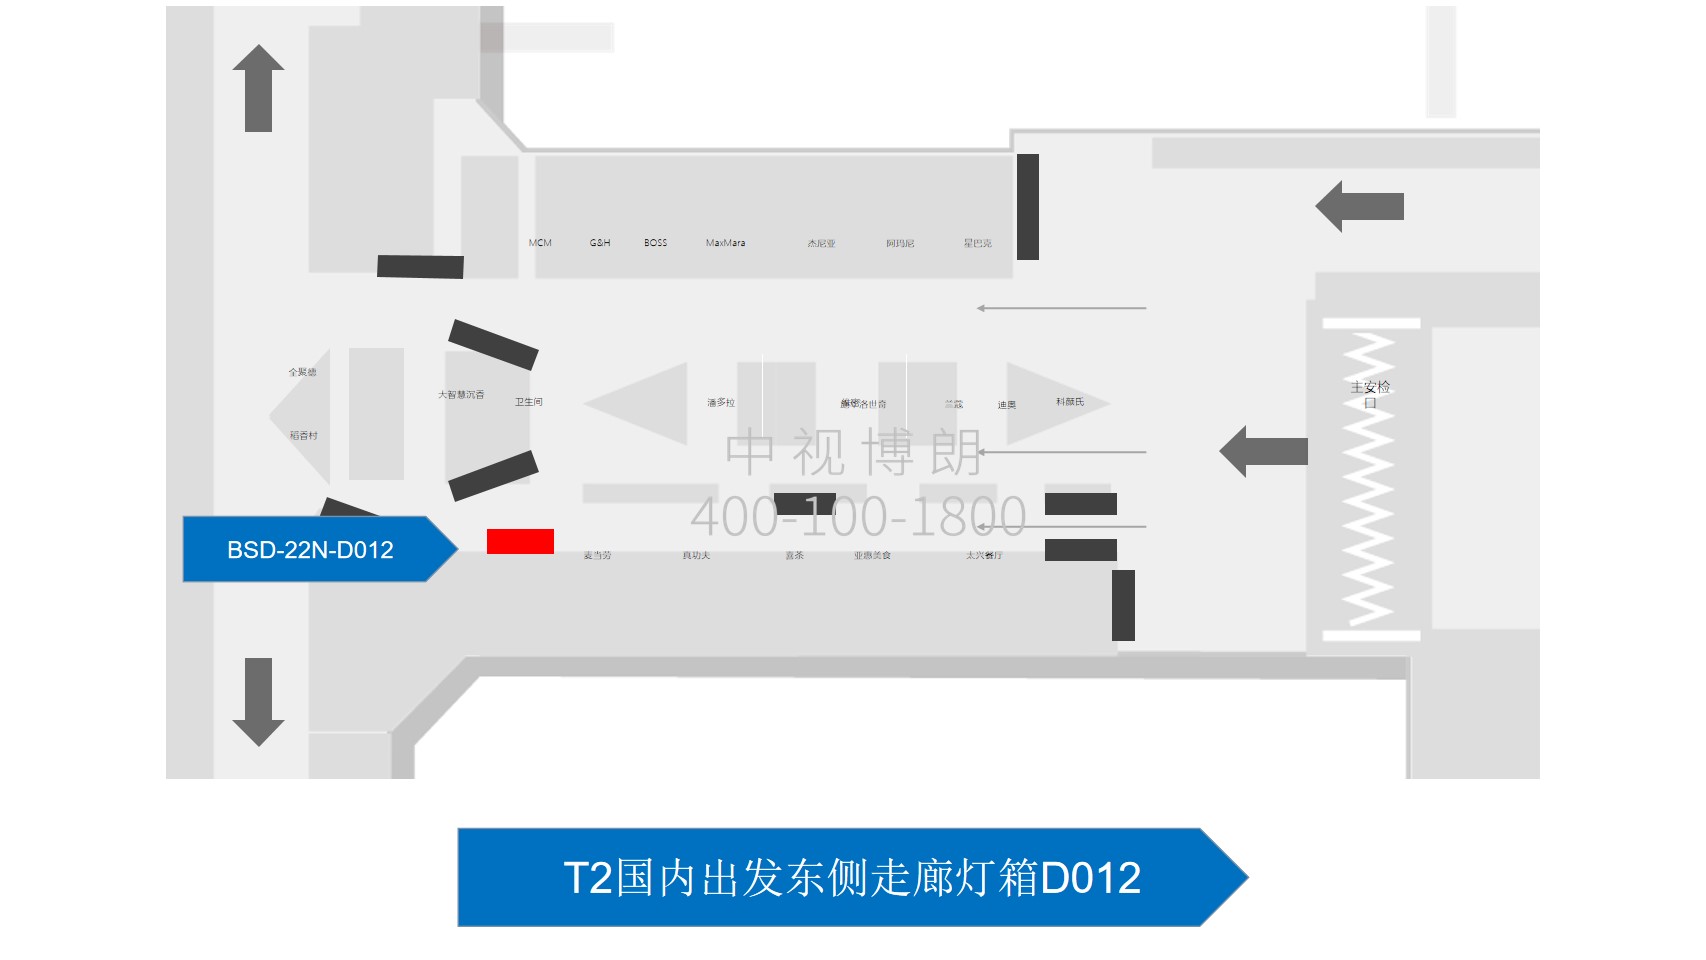 北京首都机场广告-T2 Domestic Departure East Corridor Light Box D012位置图